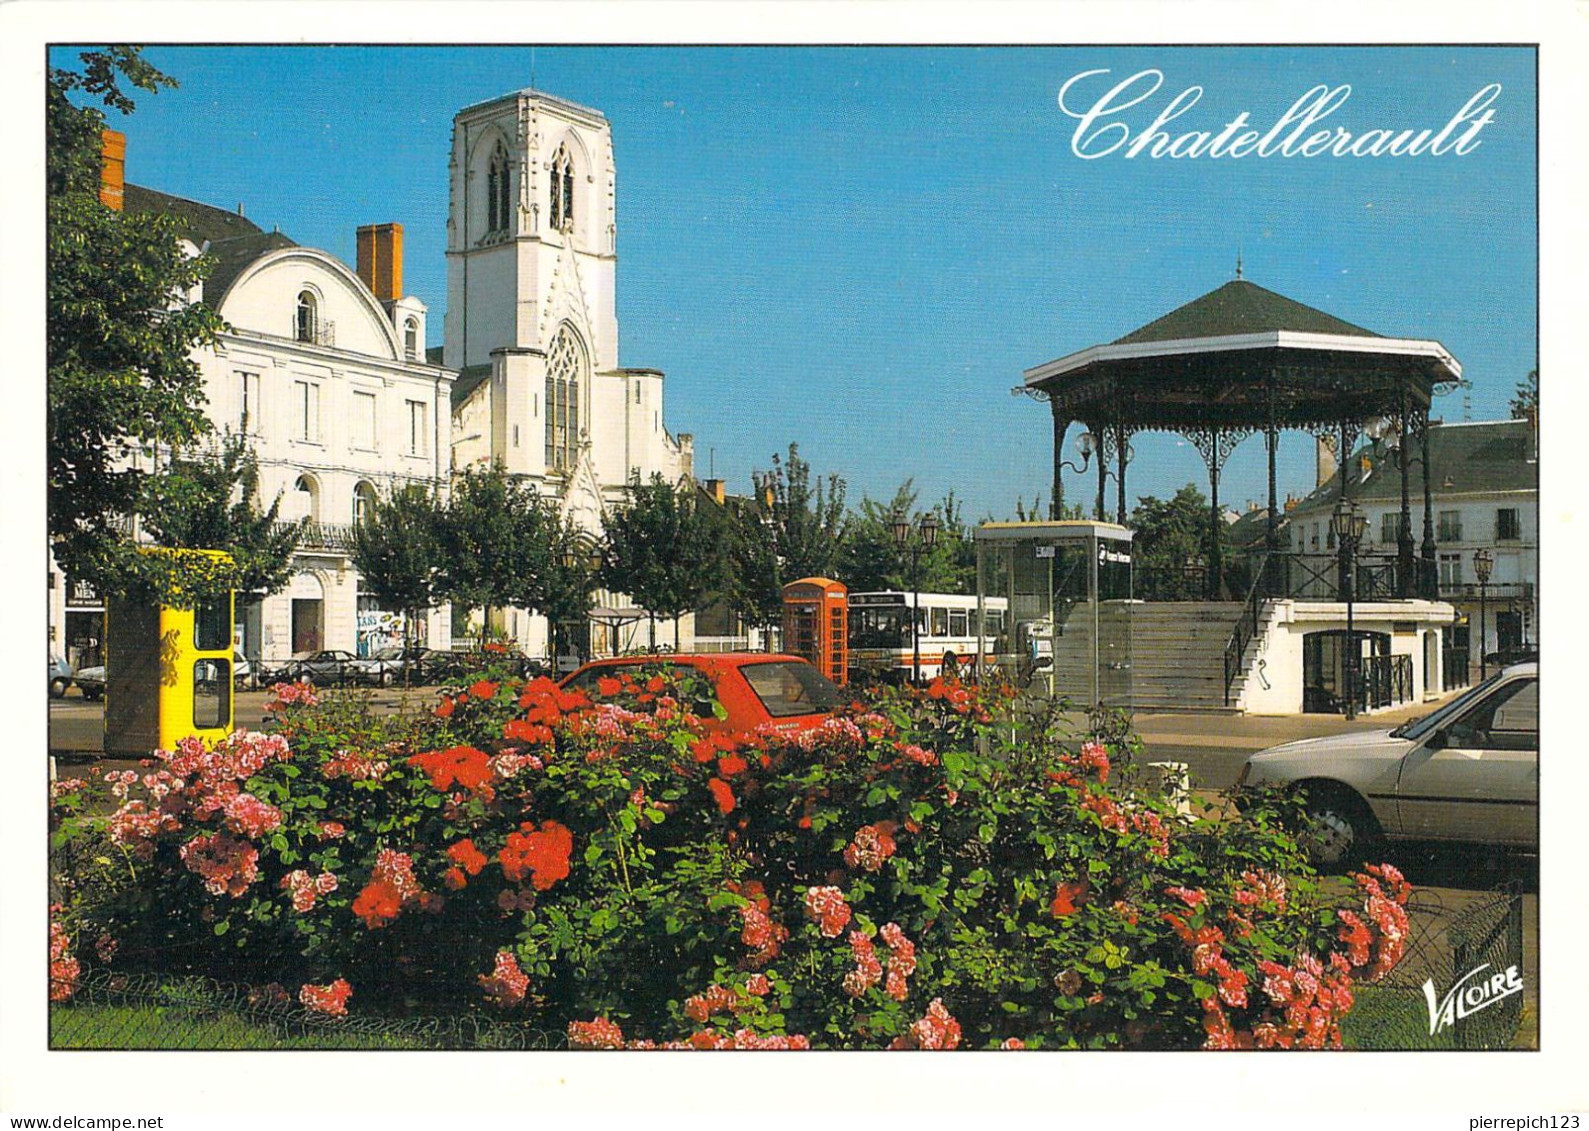 86 - Châtellerault - L'église Saint Jean Baptiste Et Le Kiosque à Musique, Boulevard Blossac - Chatellerault